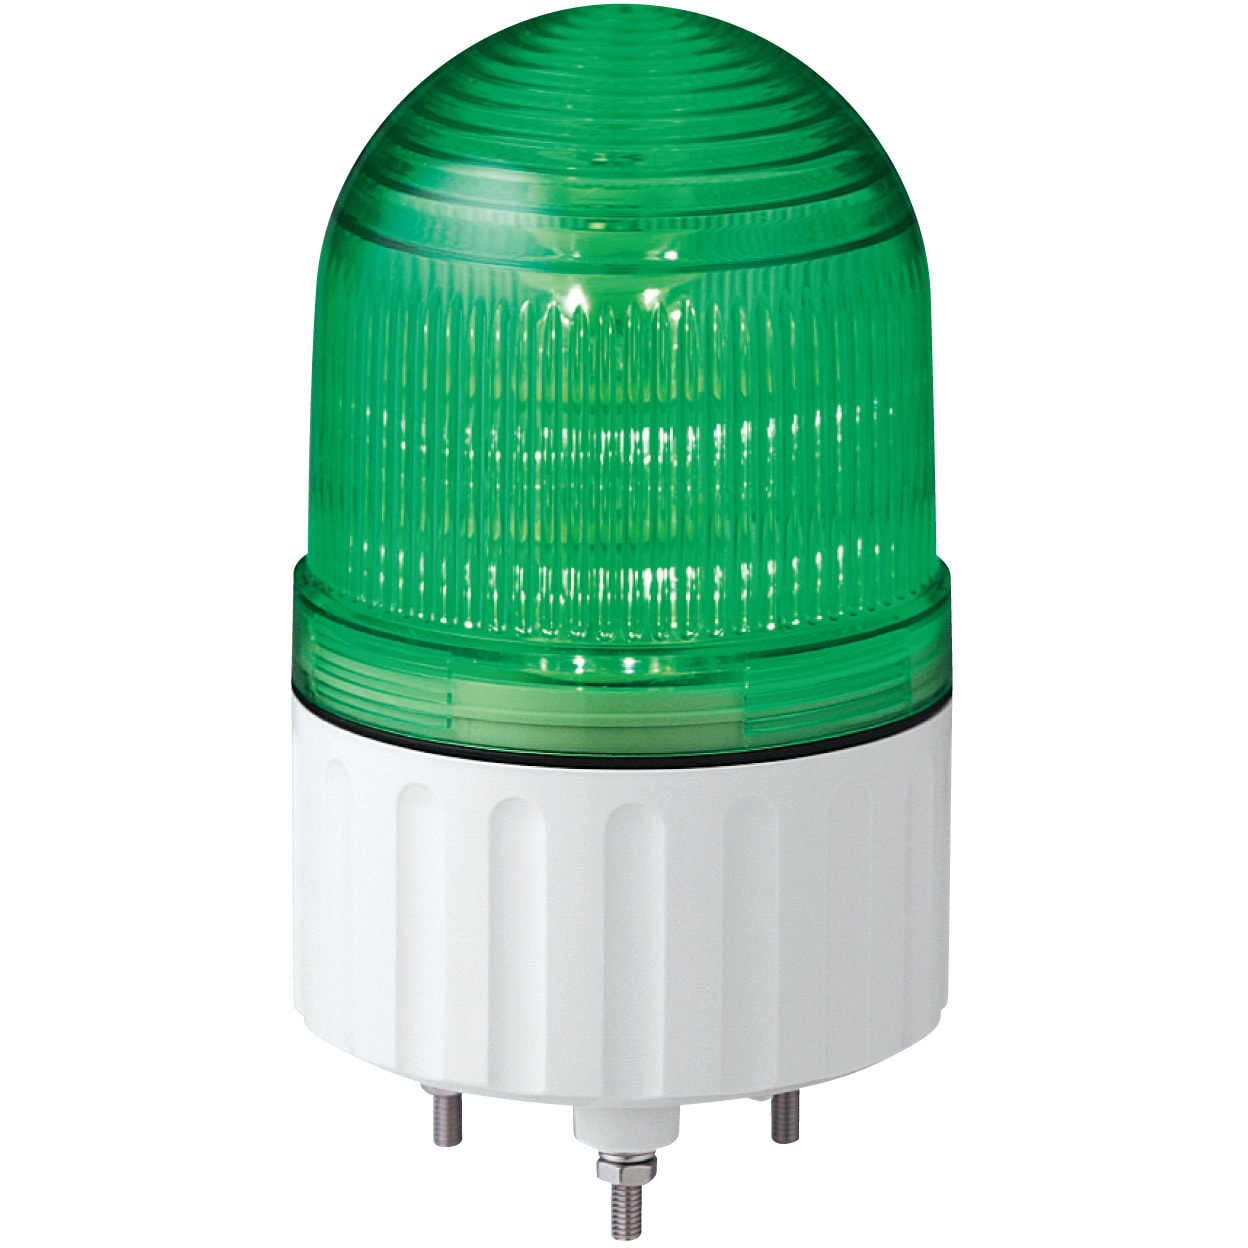 超小型LED表示灯 弾頭形 AC200V 発光色:緑 寸法Φ84×86mm 1個